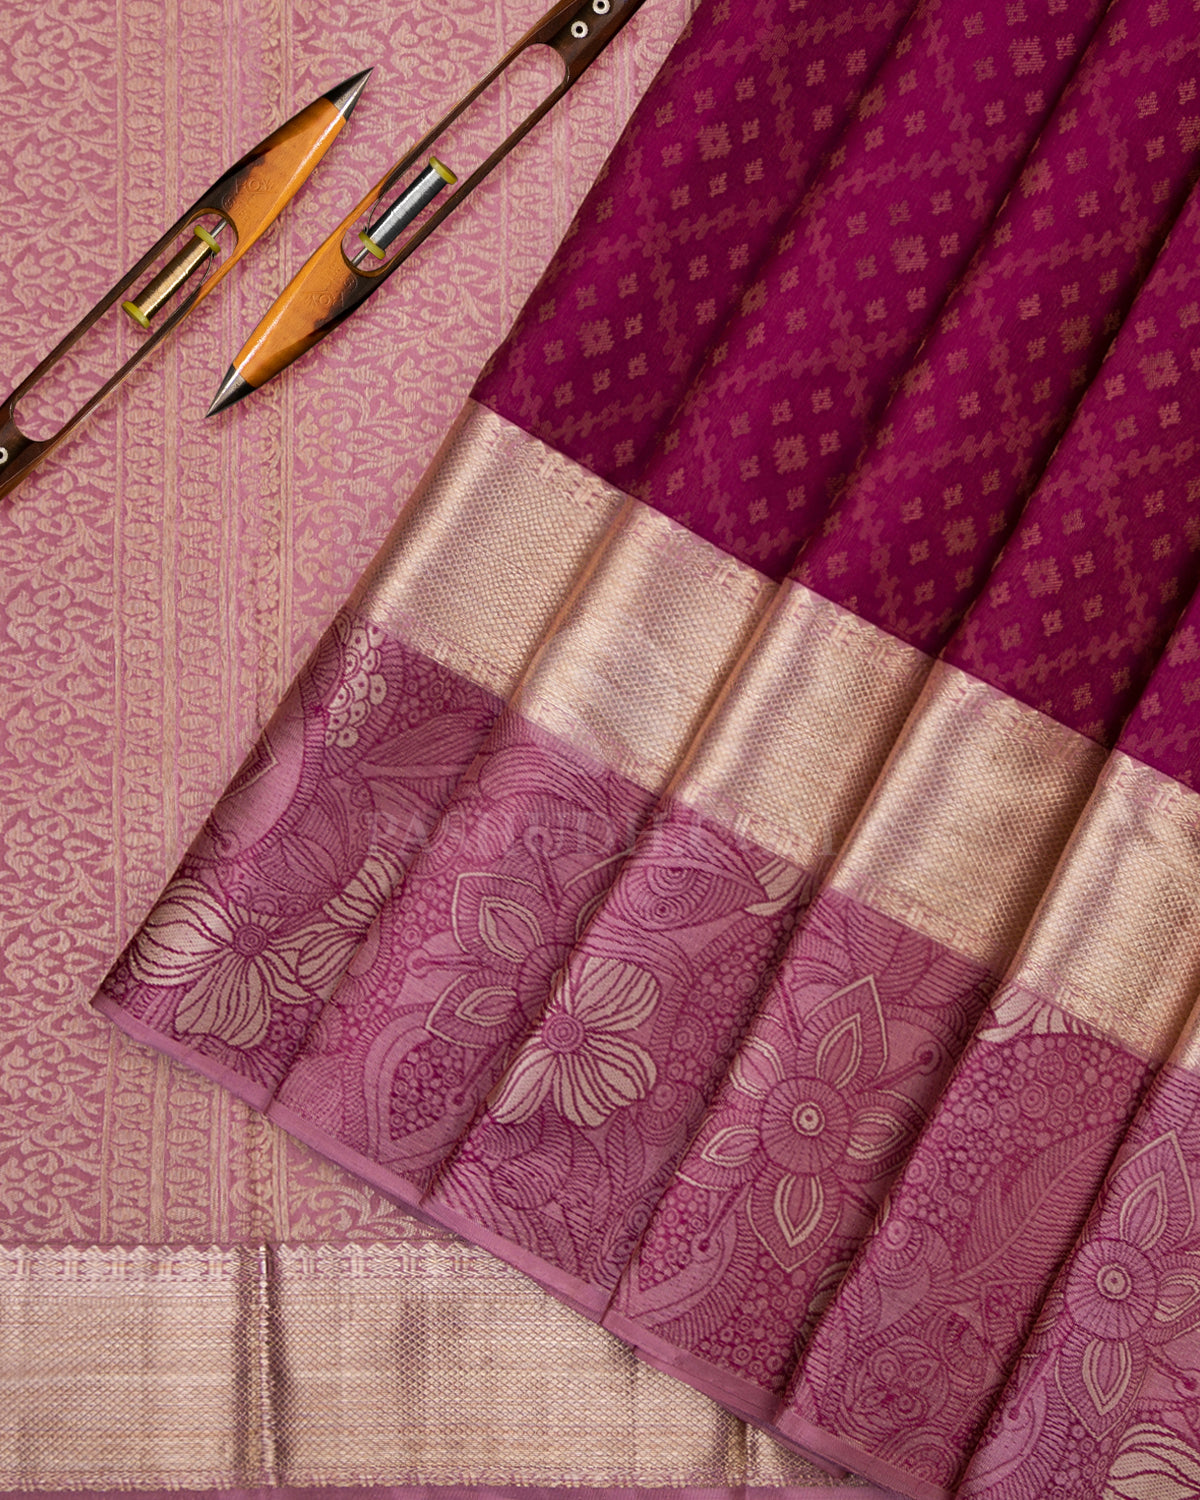 Paaku/ Betel Nut & Light Pink Kanjivaram Silk Saree - D434 -View 2